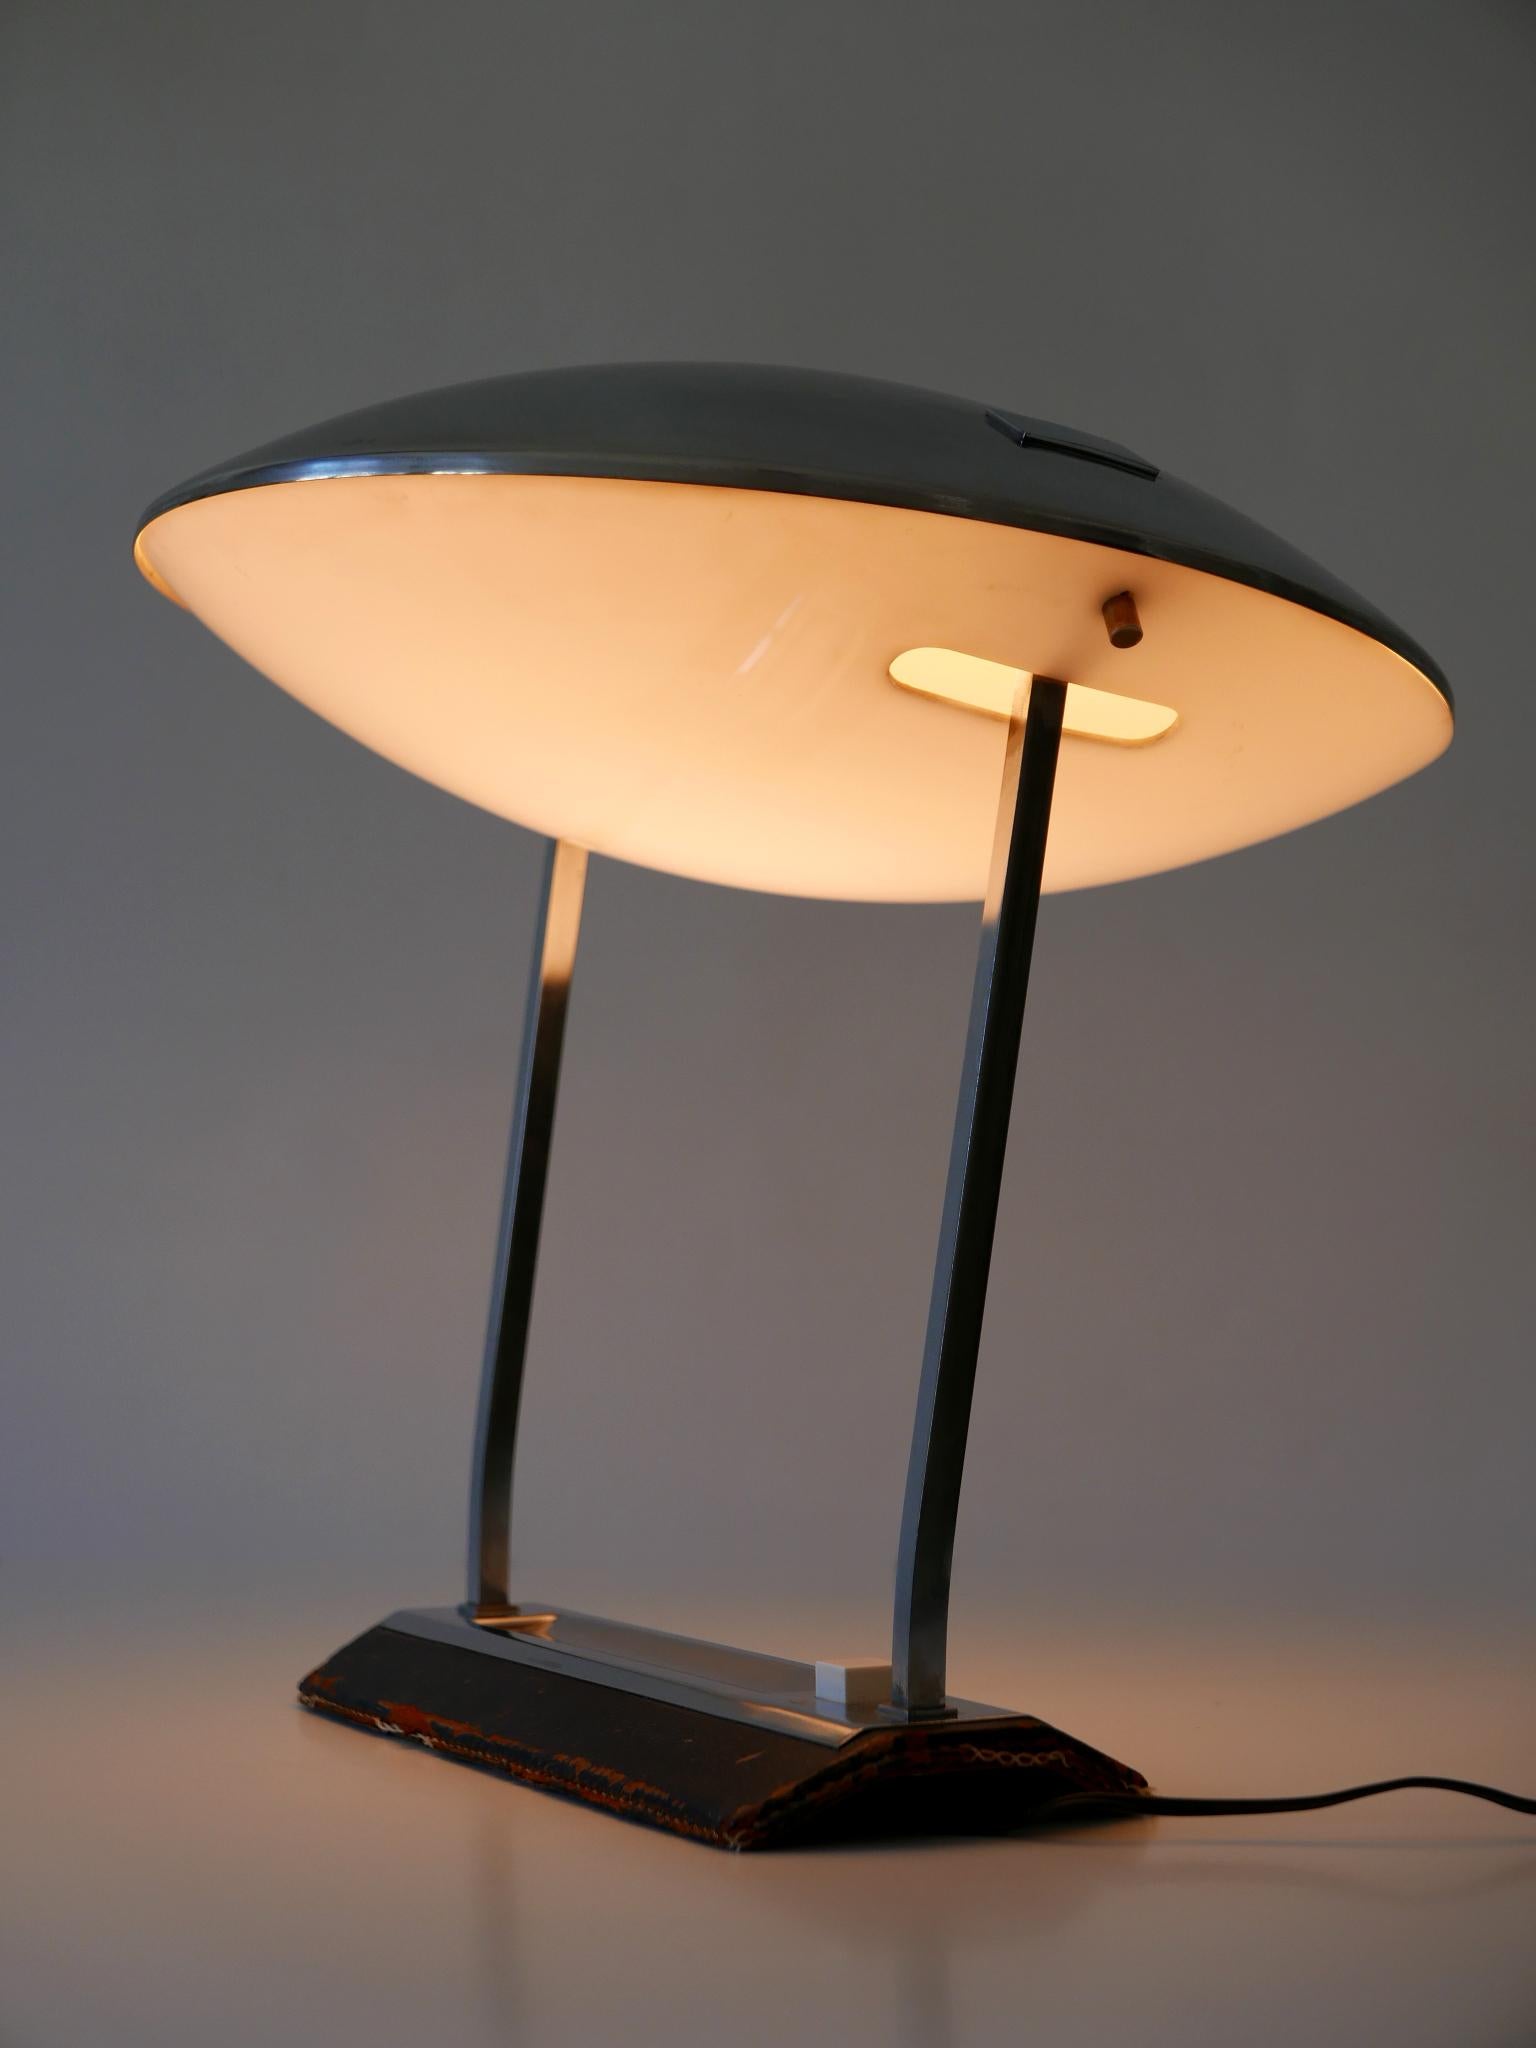 Rare Mid Century Modern Stilnovo Desk Lamp Model 8050 Metalarte 1960s For Sale 8